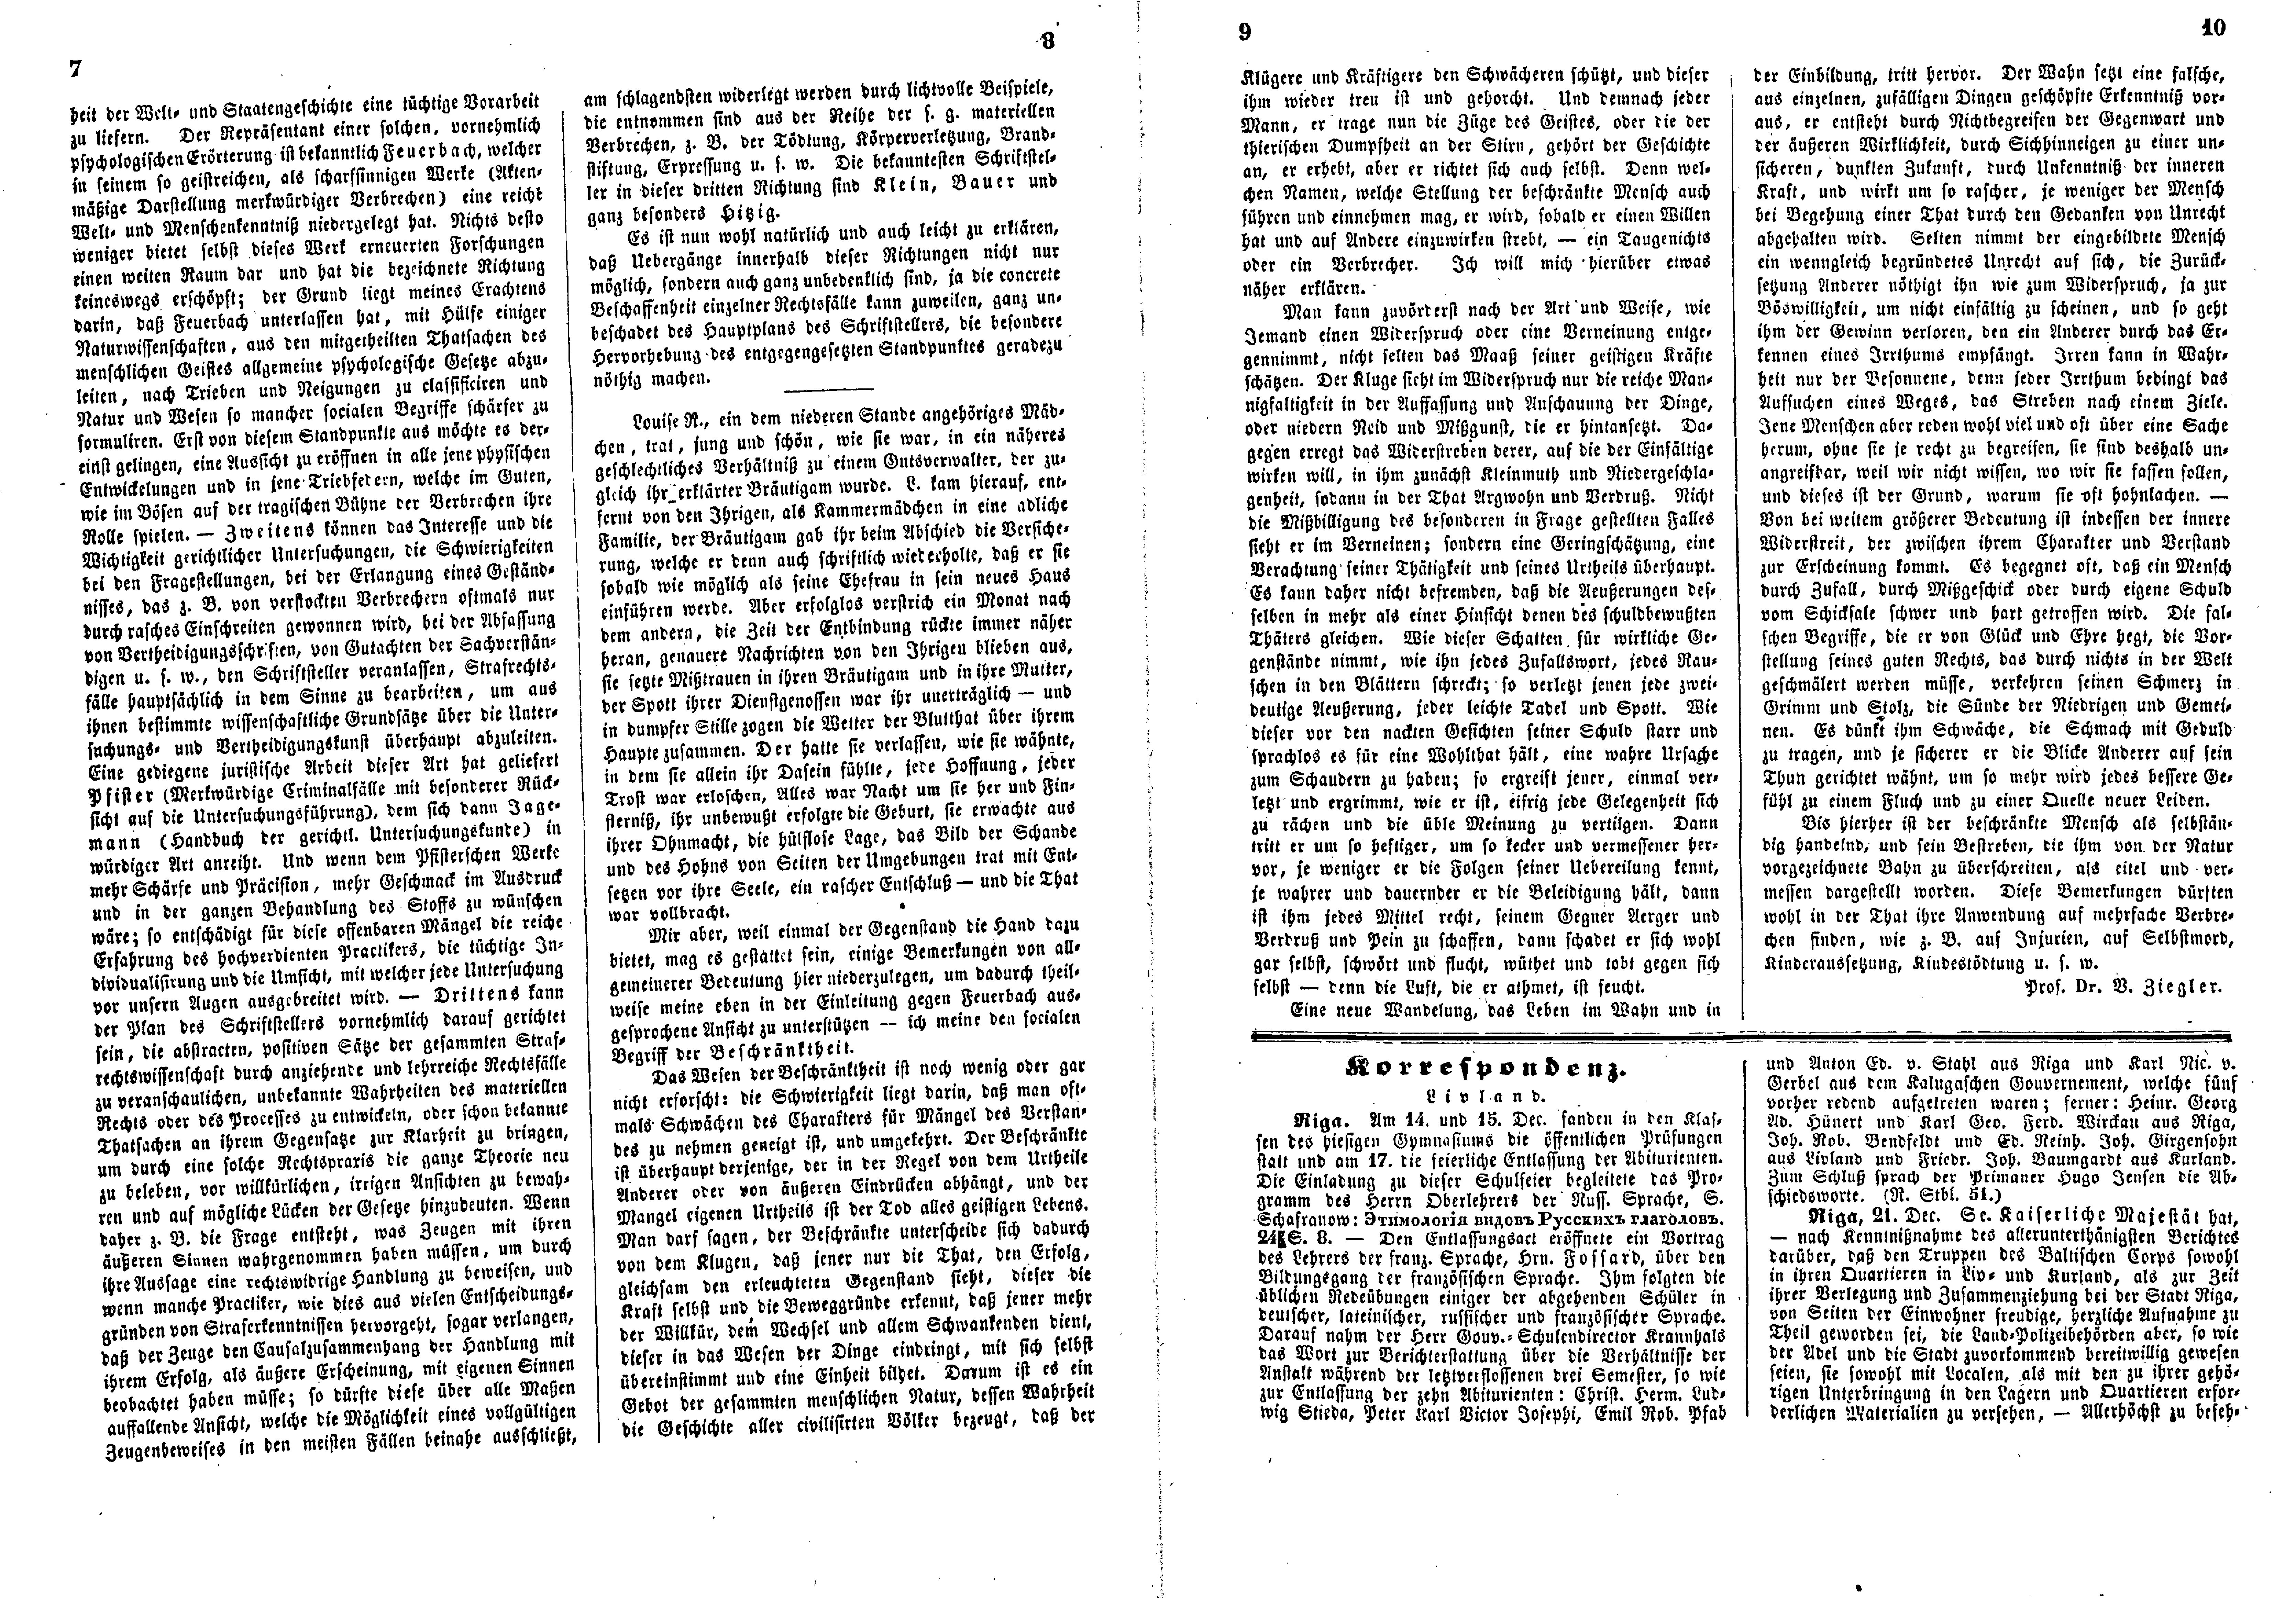 Das Inland [21] (1856) | 11. (7-10) Põhitekst